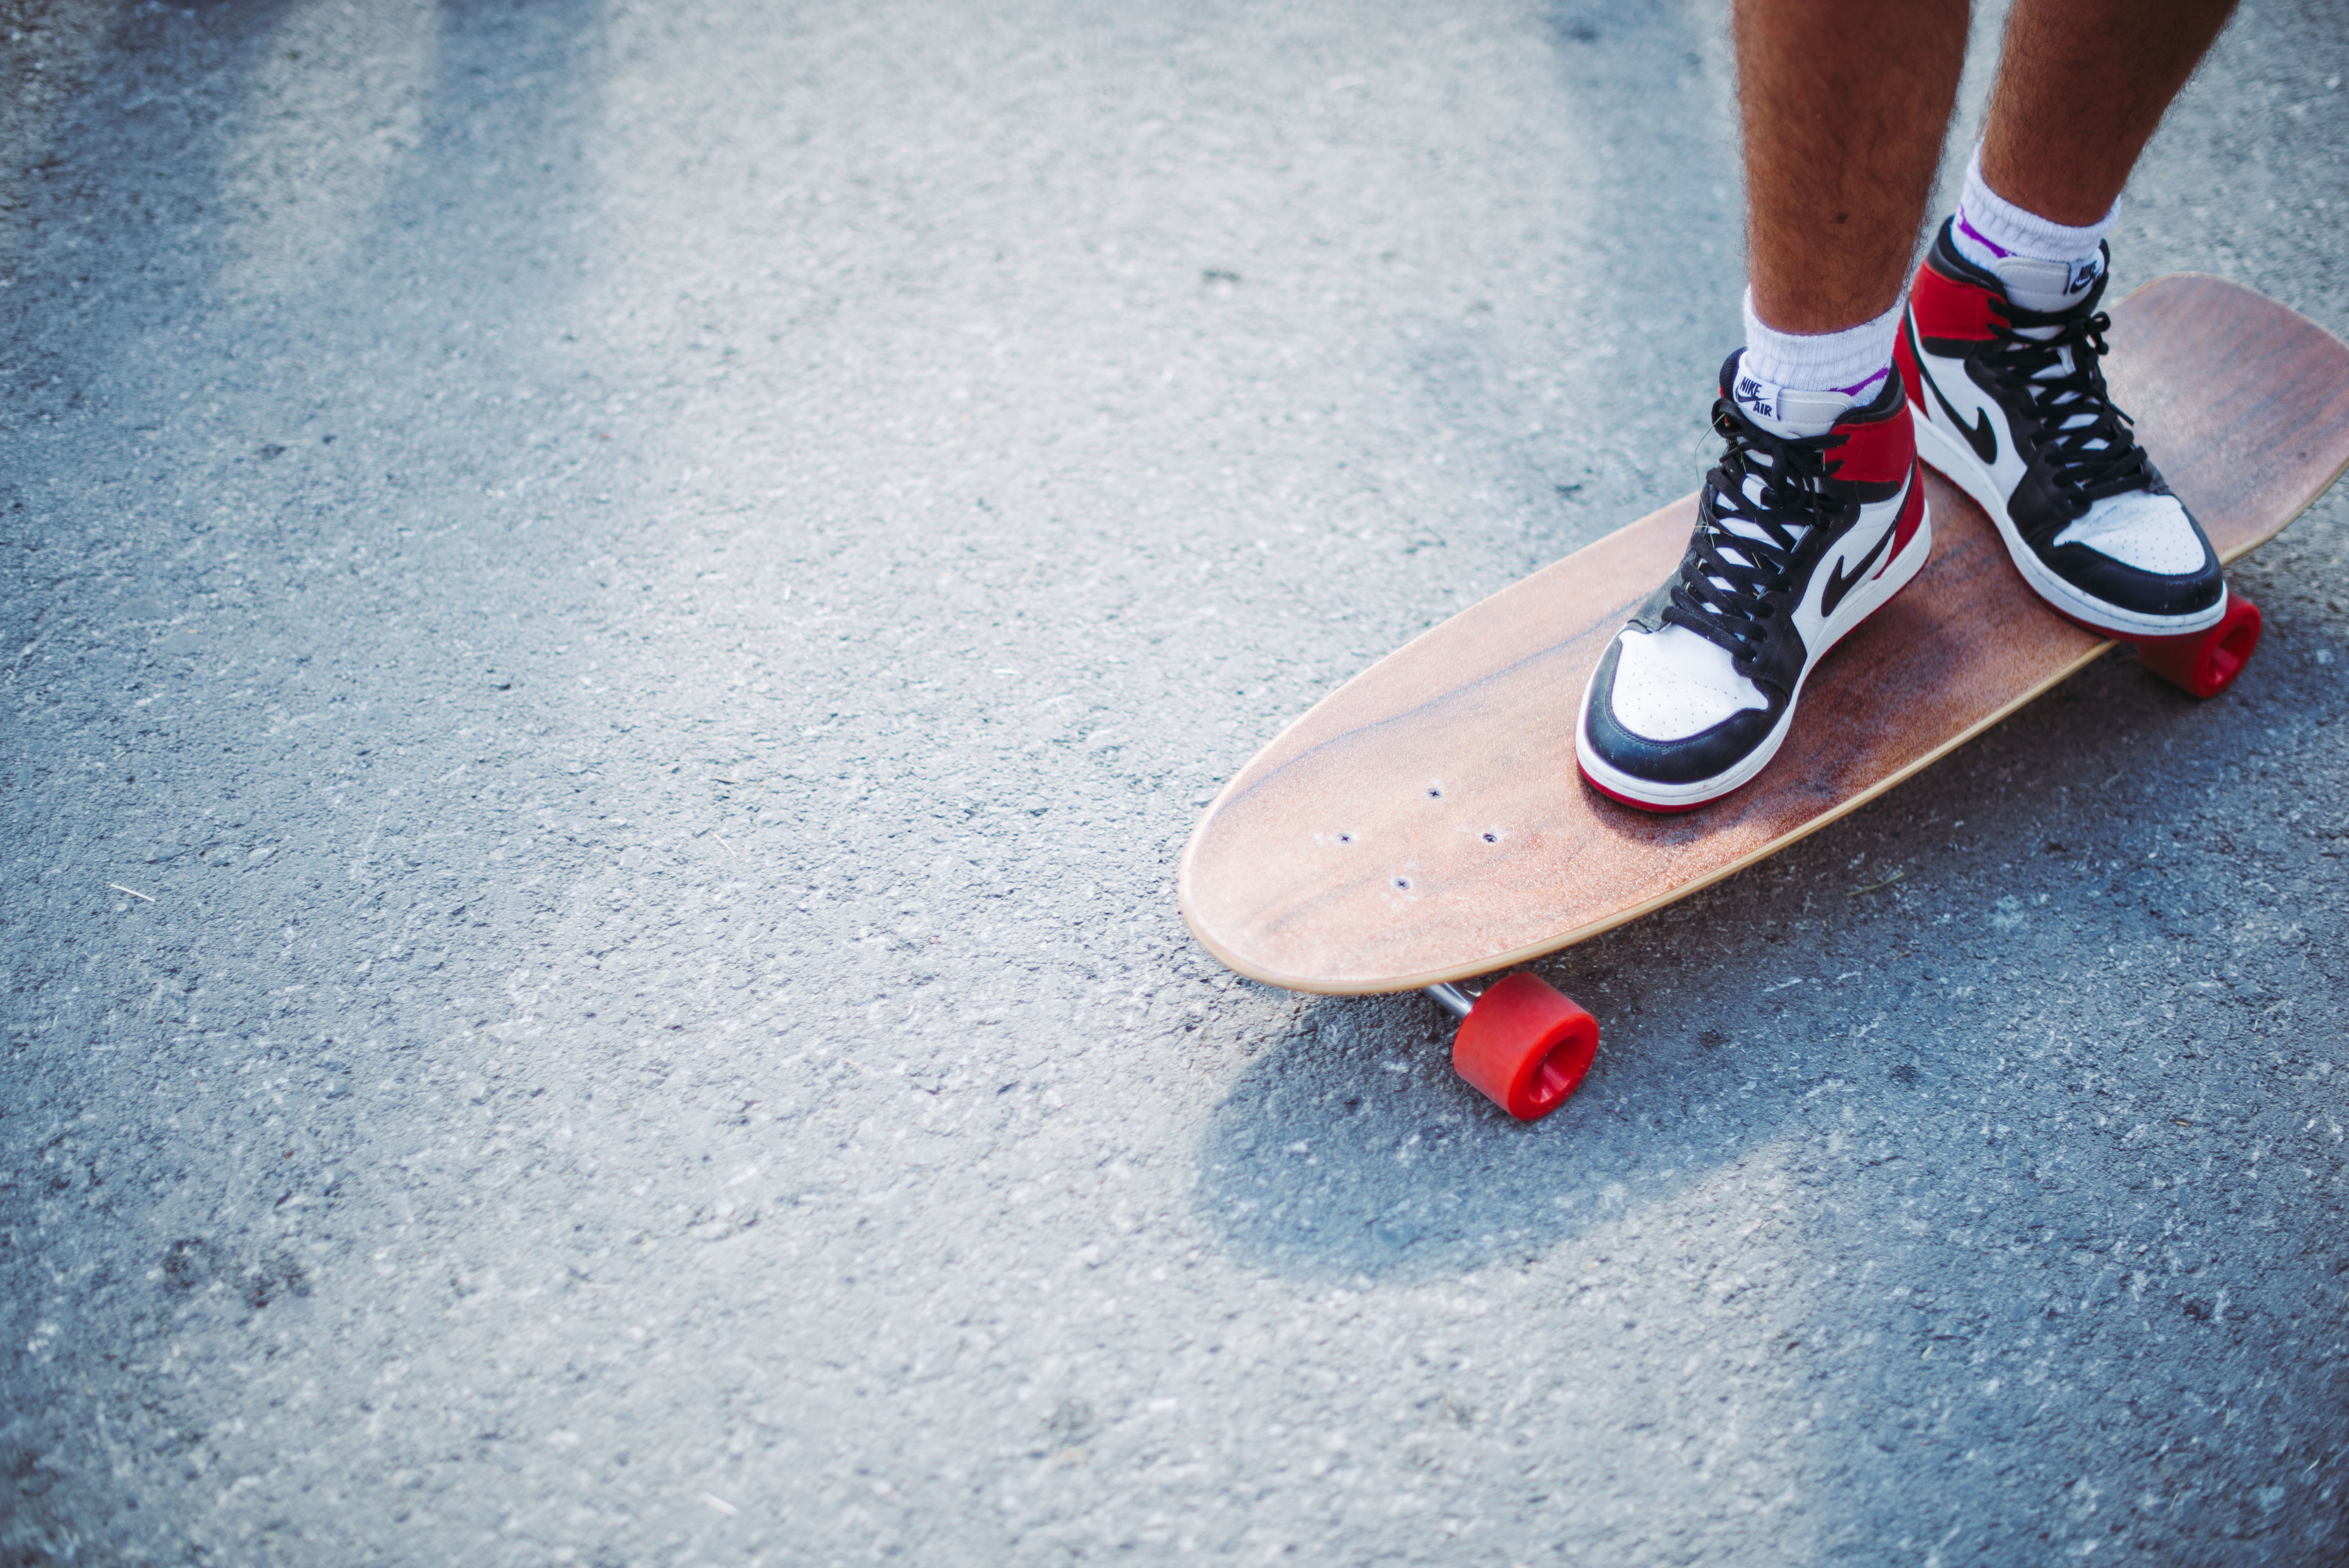 miscellanea, miscellaneous, legs, sneakers, asphalt, skateboard, longboard HD wallpaper